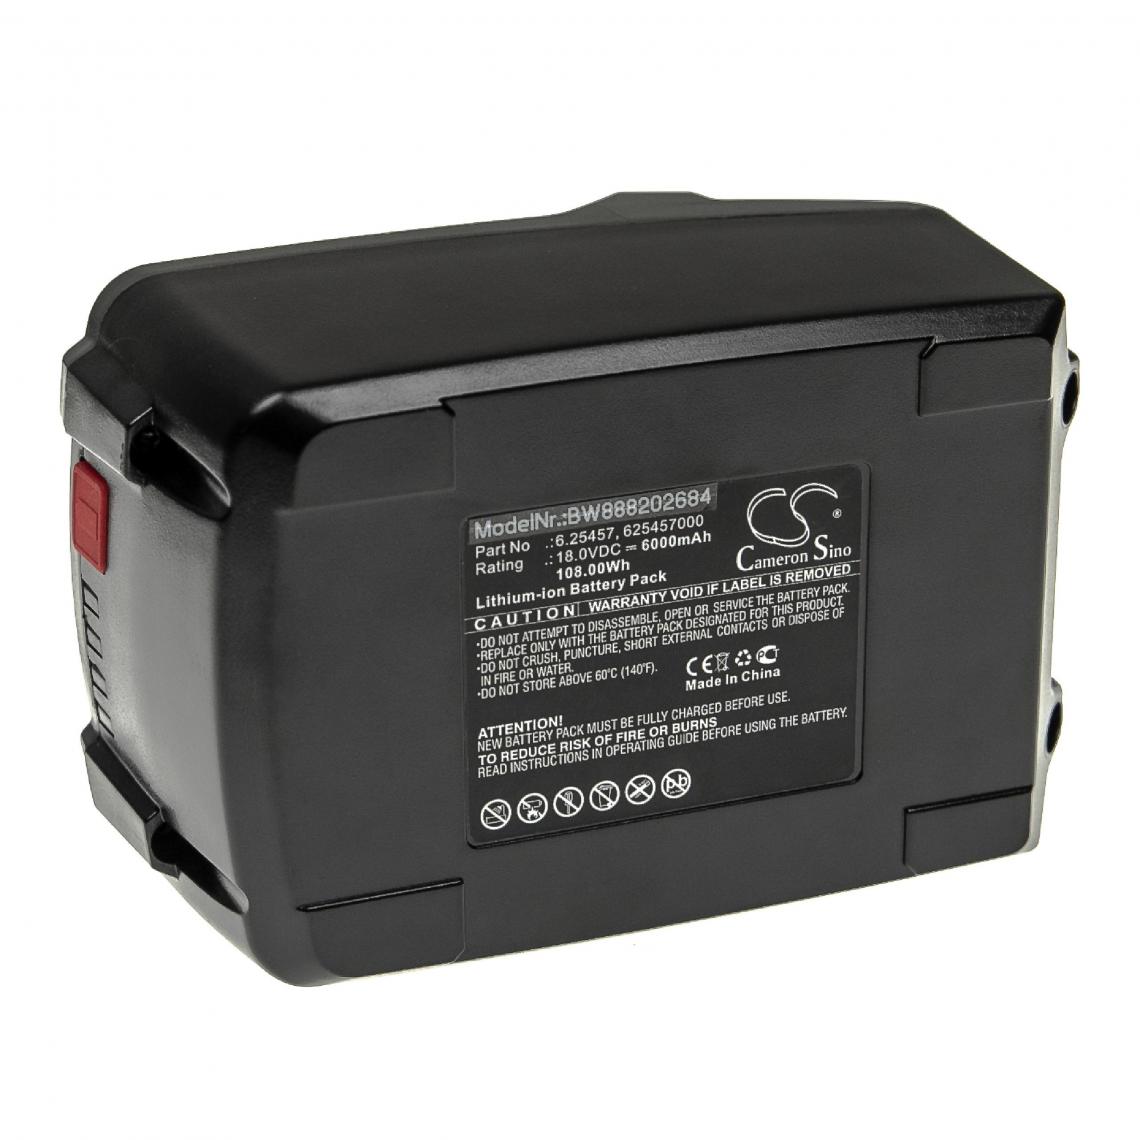 Vhbw - vhbw Batterie compatible avec Haaga K 65 18M bl PURE, KSS 40 18M bl PURE, KSS 50 18M bl PURE outil électrique (6000mAh Li-ion 18 V) - Autre appareil de mesure